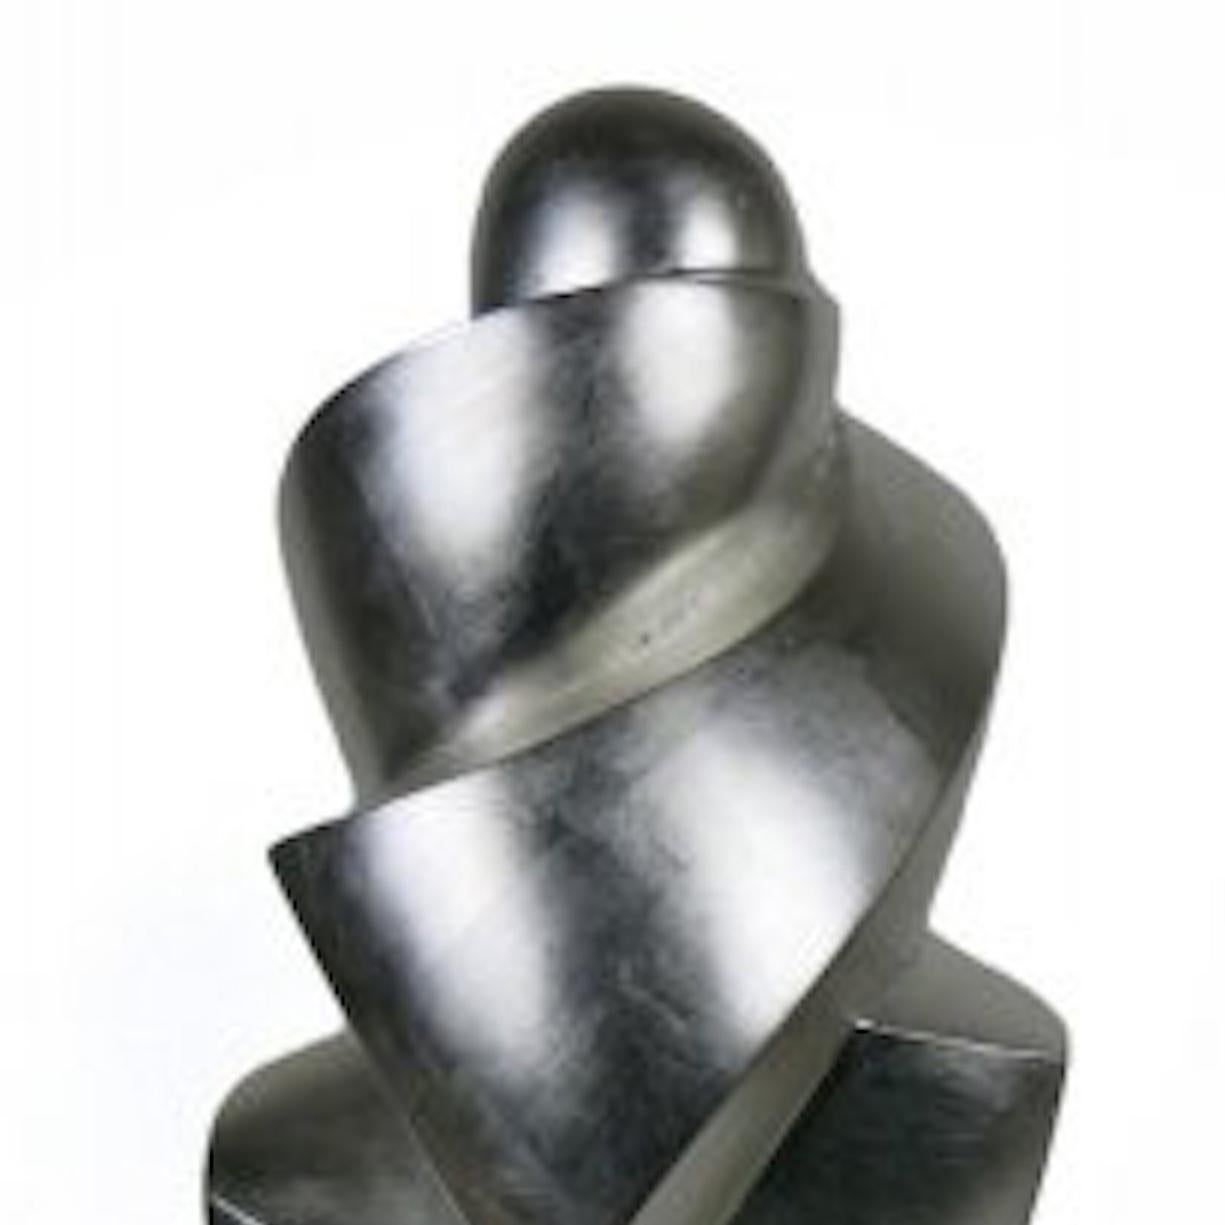 Condor in Silver - Contemporary Sculpture by Joel Urruty